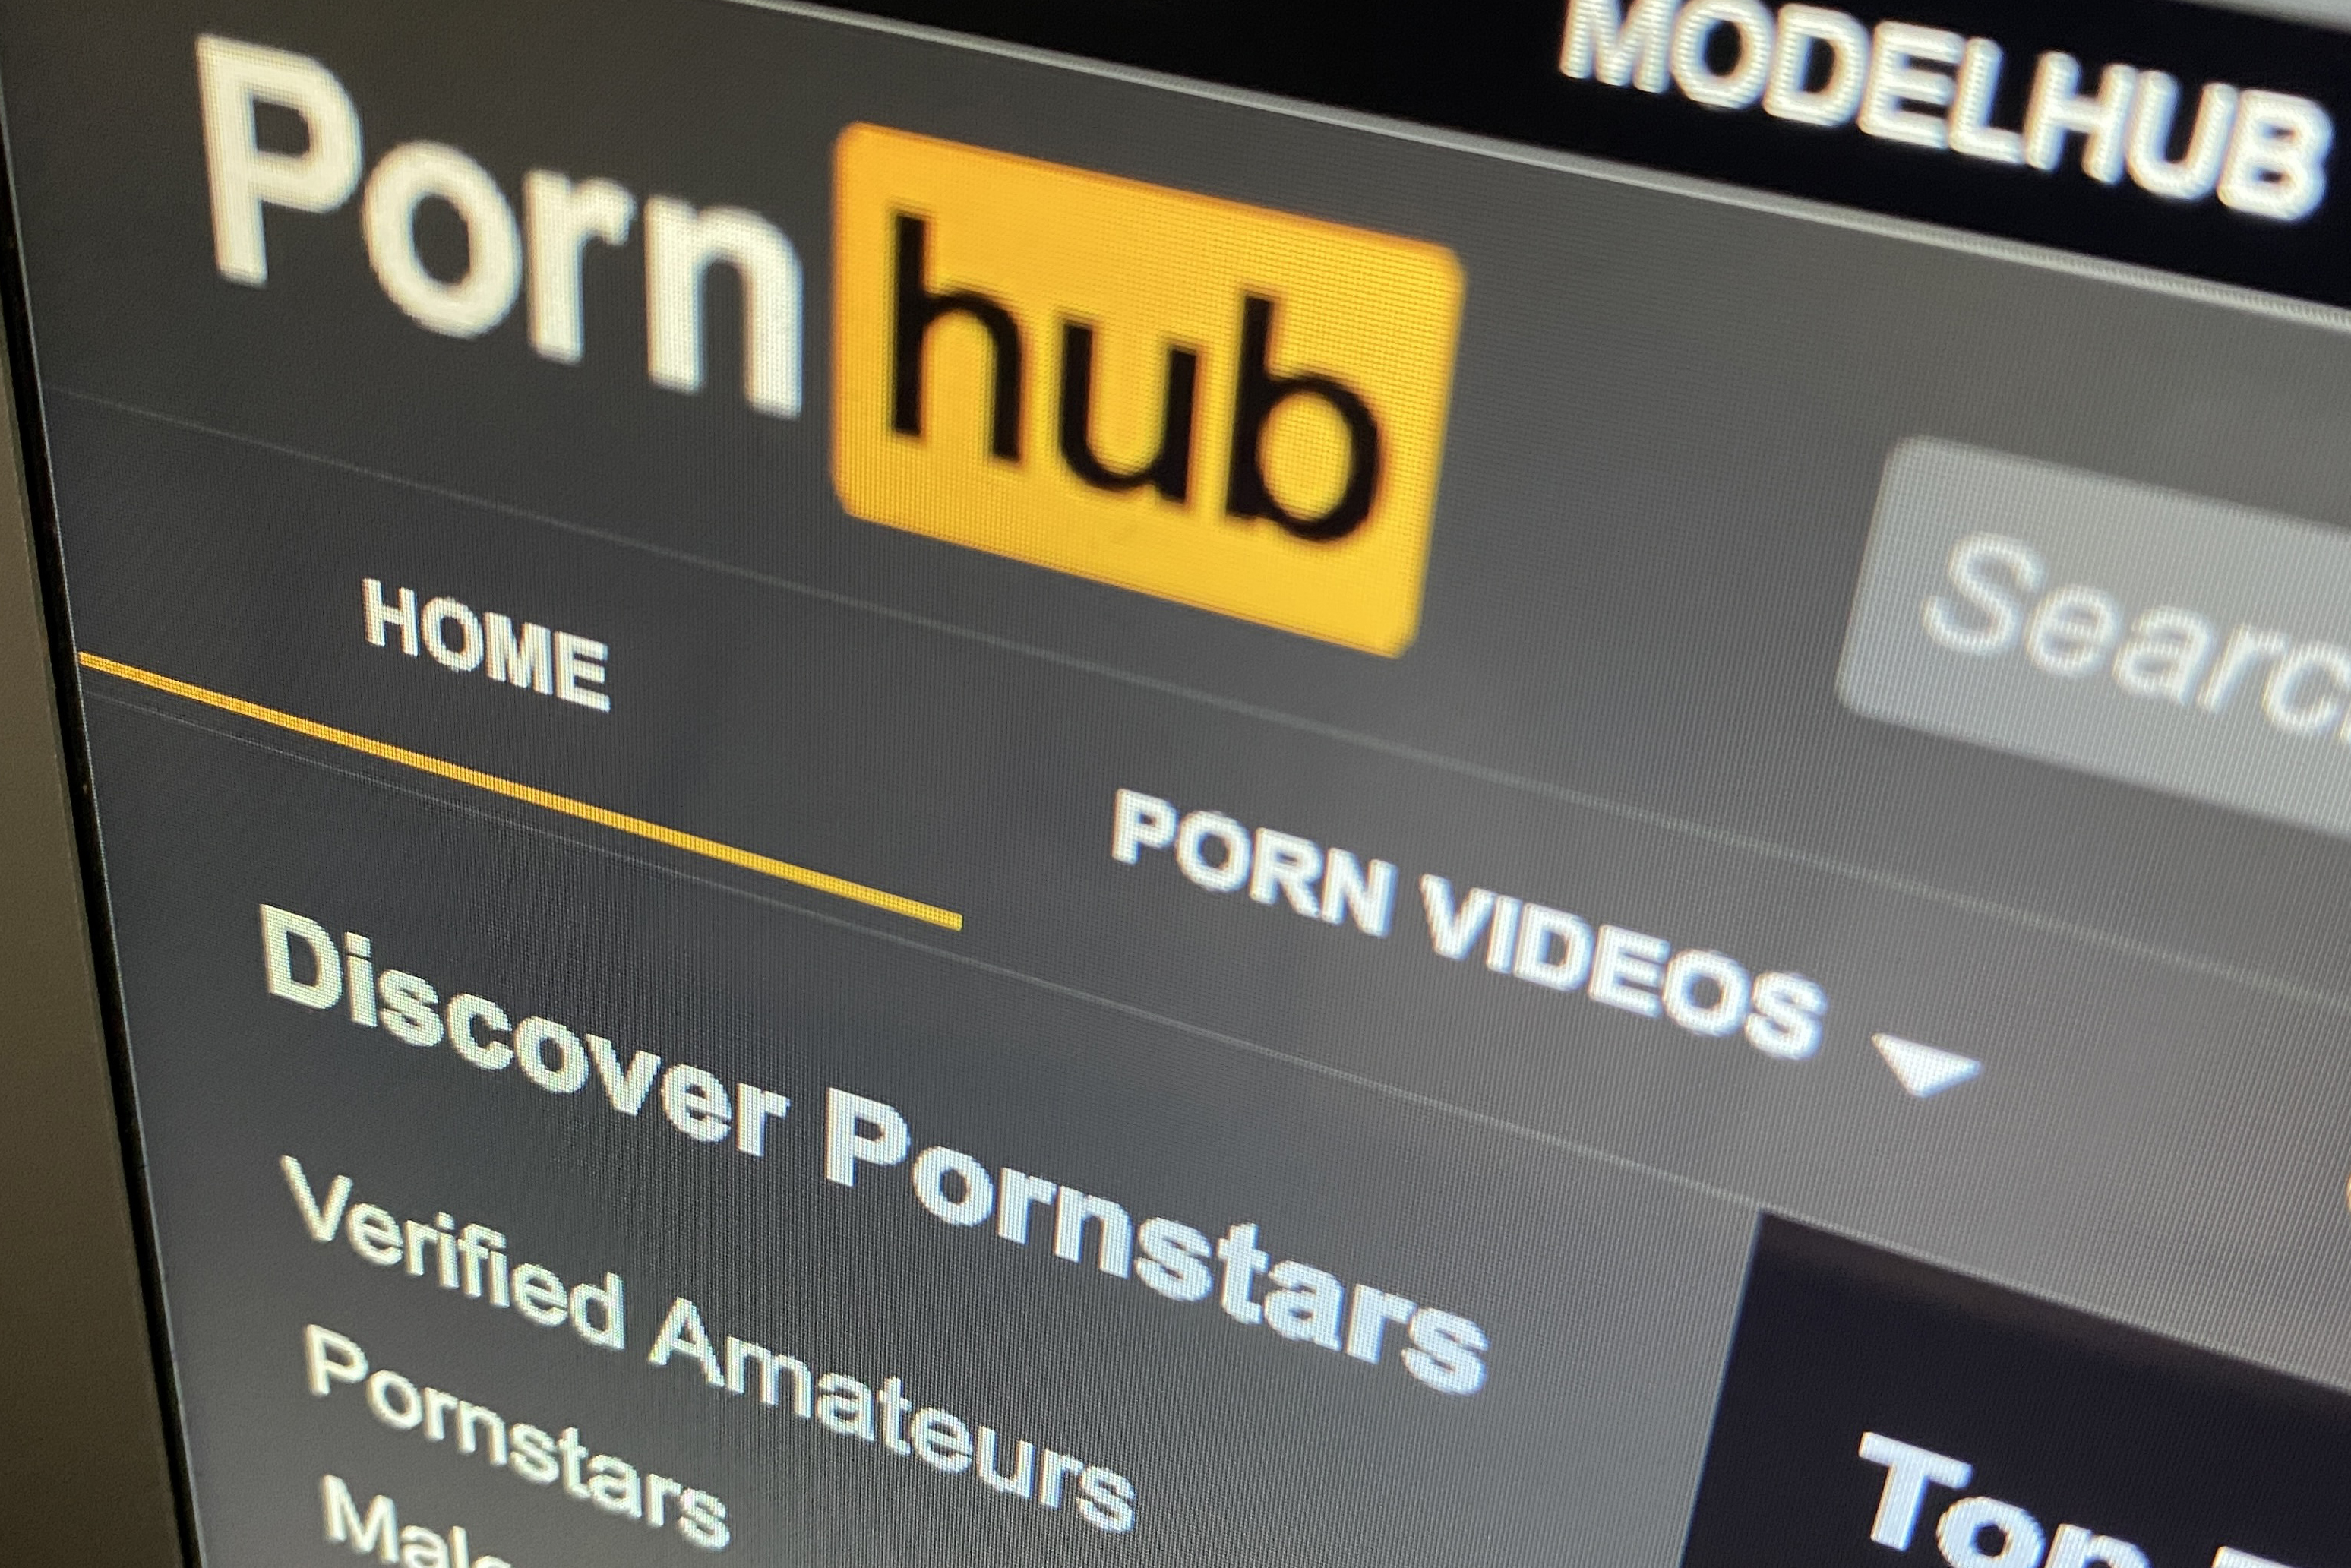 amateur pornography viewing lawsuits